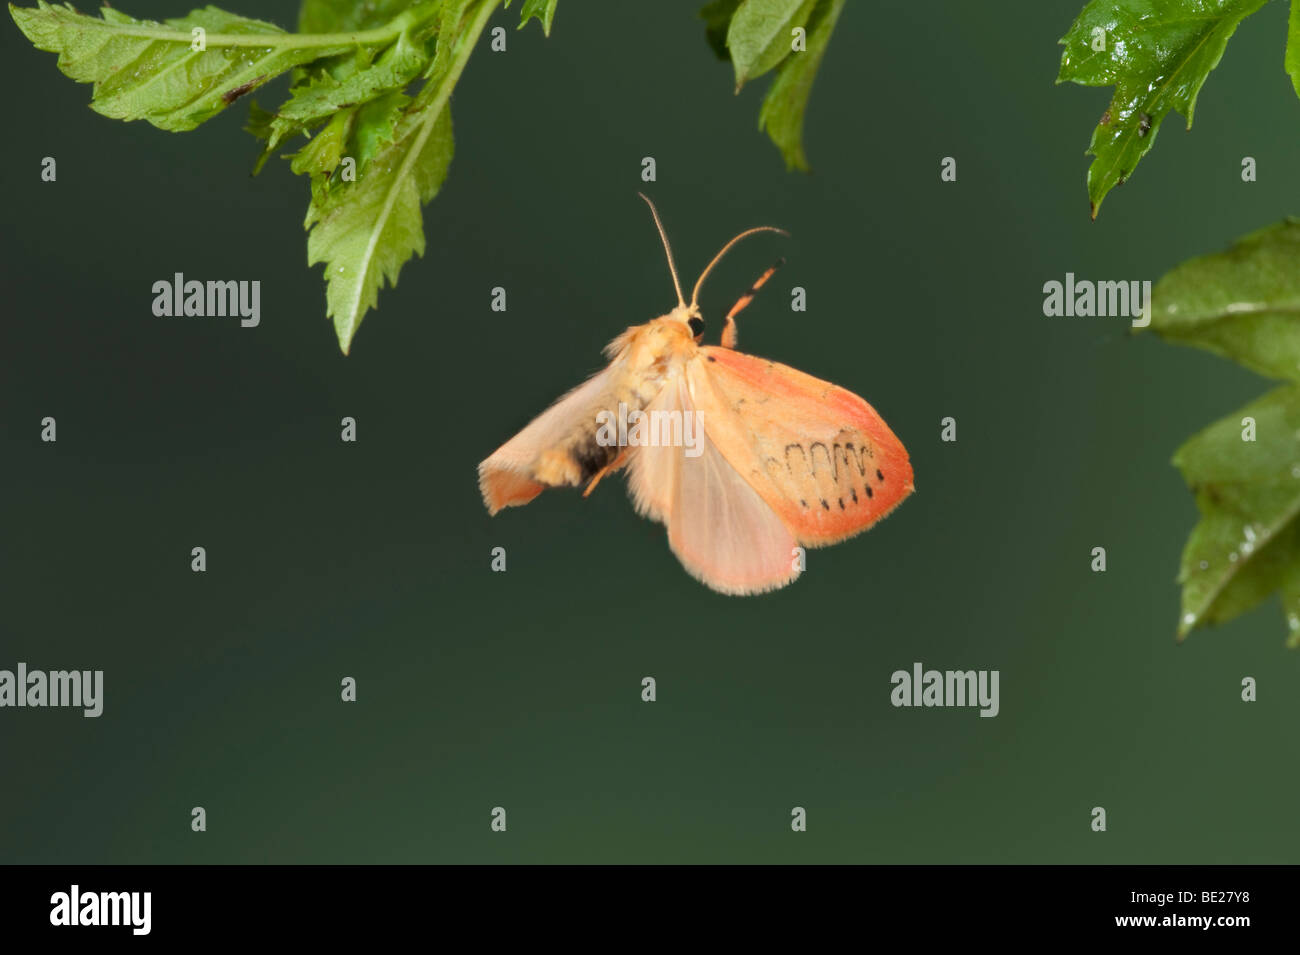 Rosy un fante Moth Miltochrista miniata in volo il volo libero ad alta velocità tecnica fotografica Foto Stock